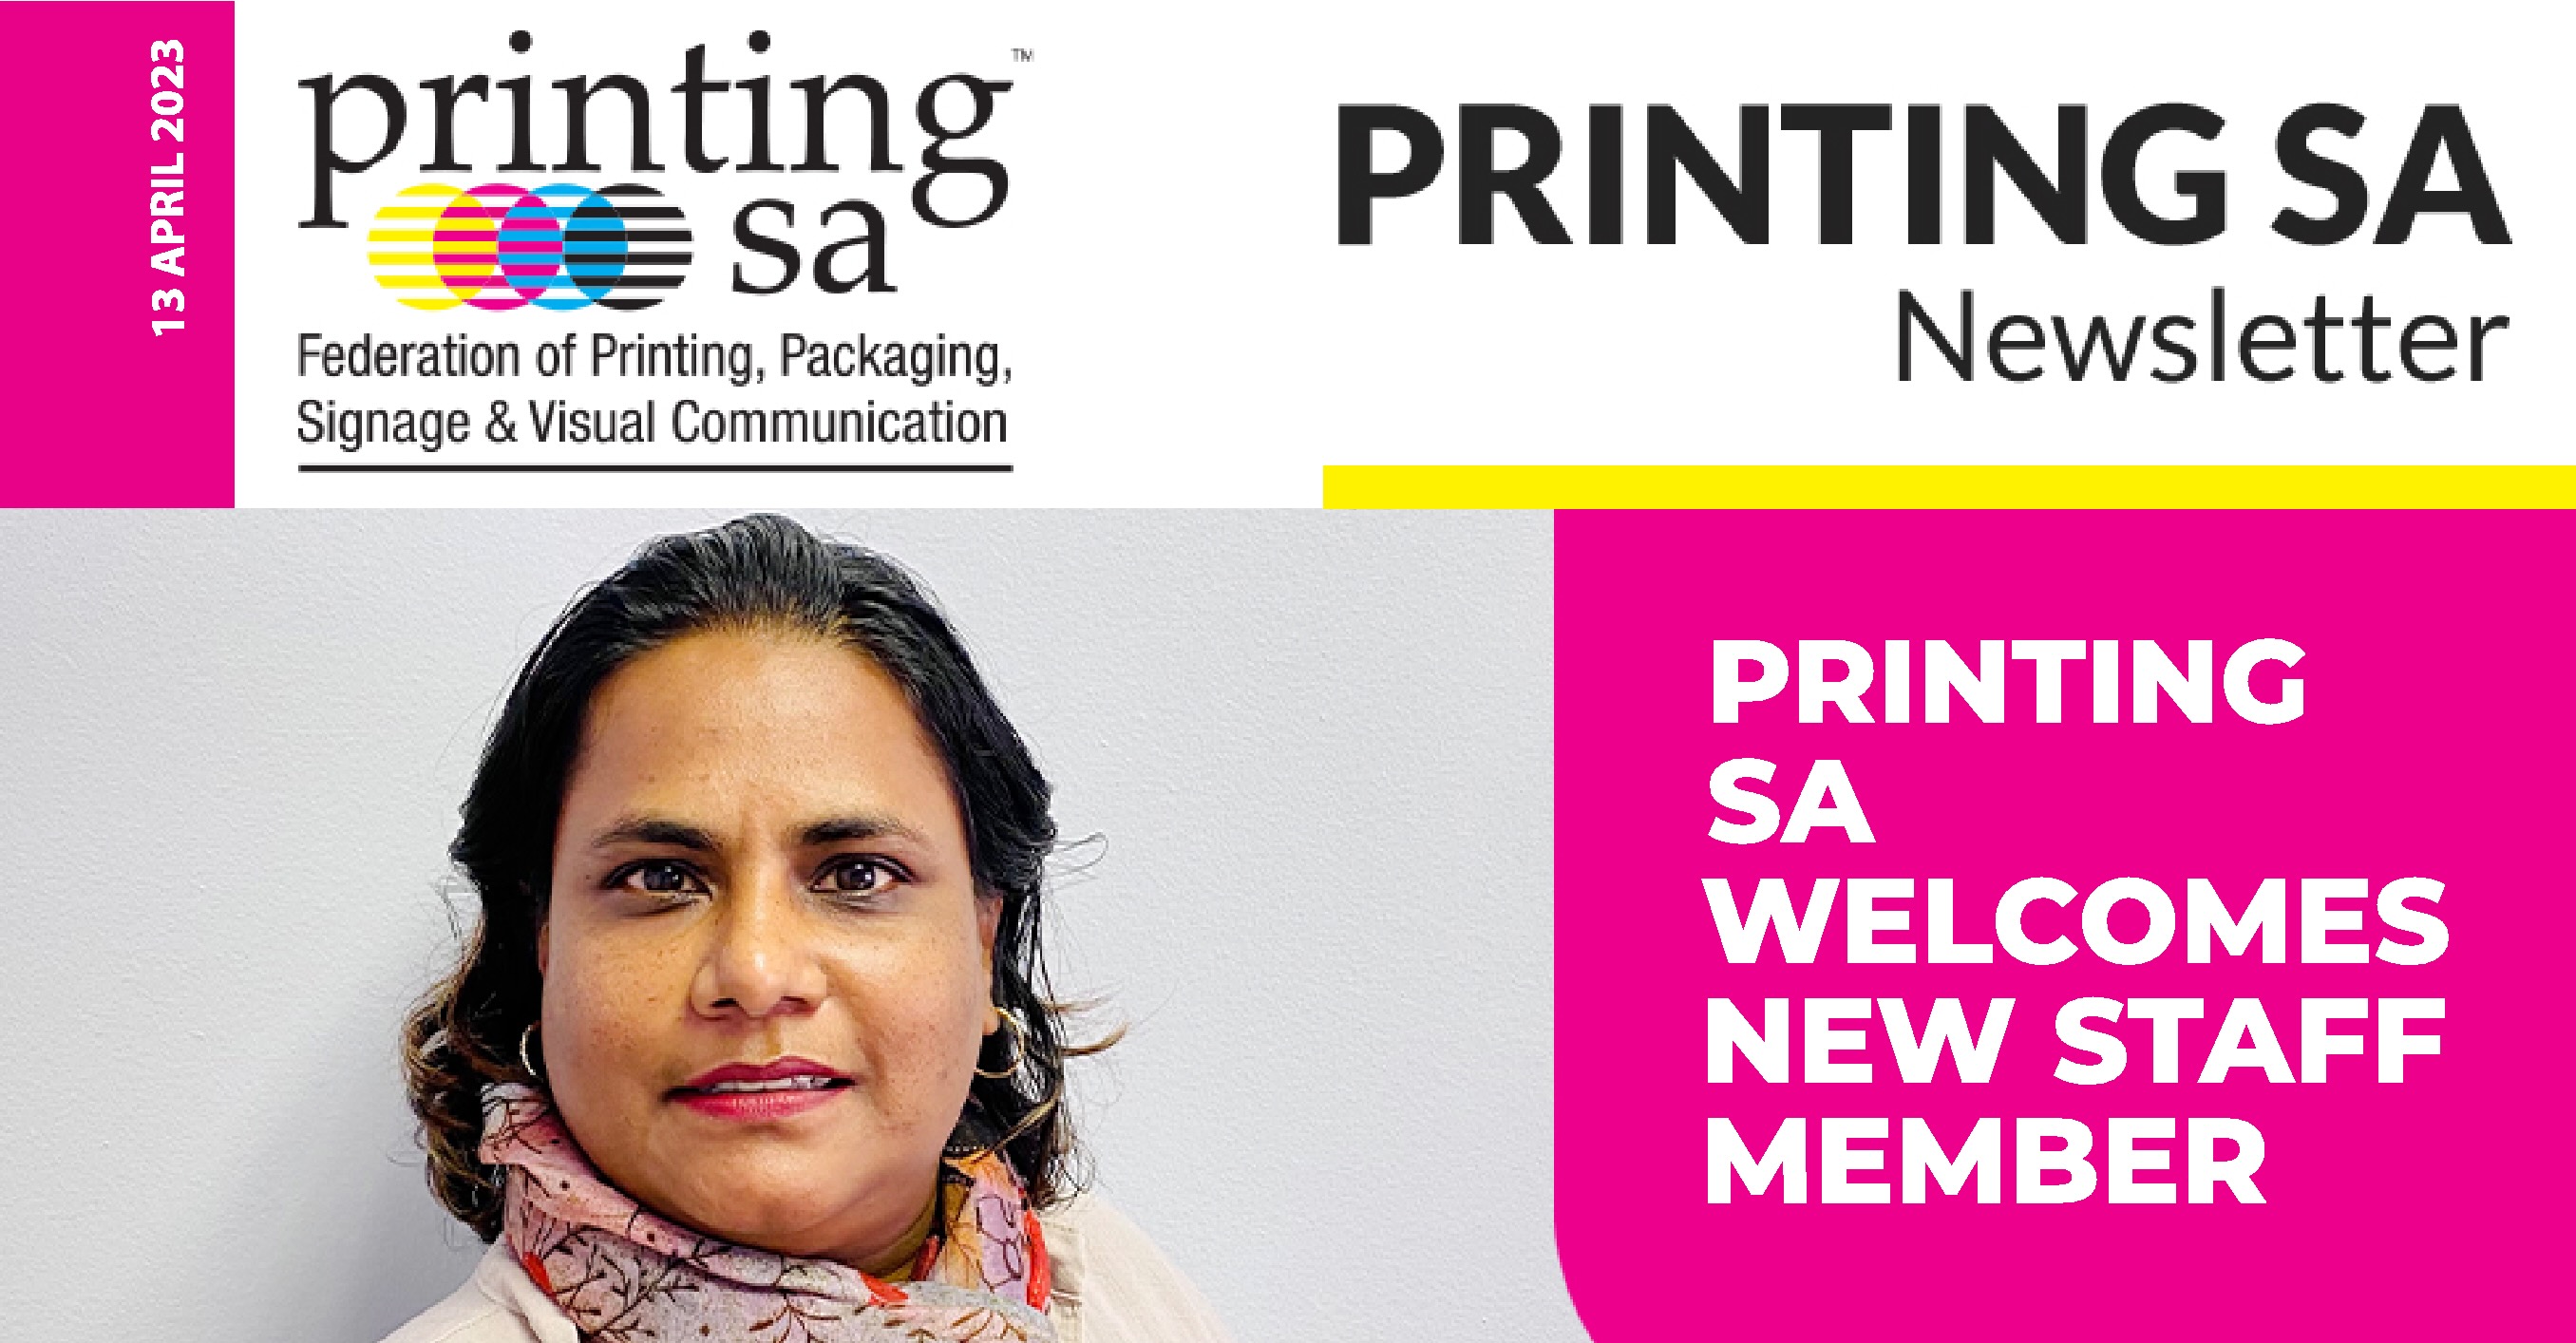 Printing SA Welcomes New Staff Member